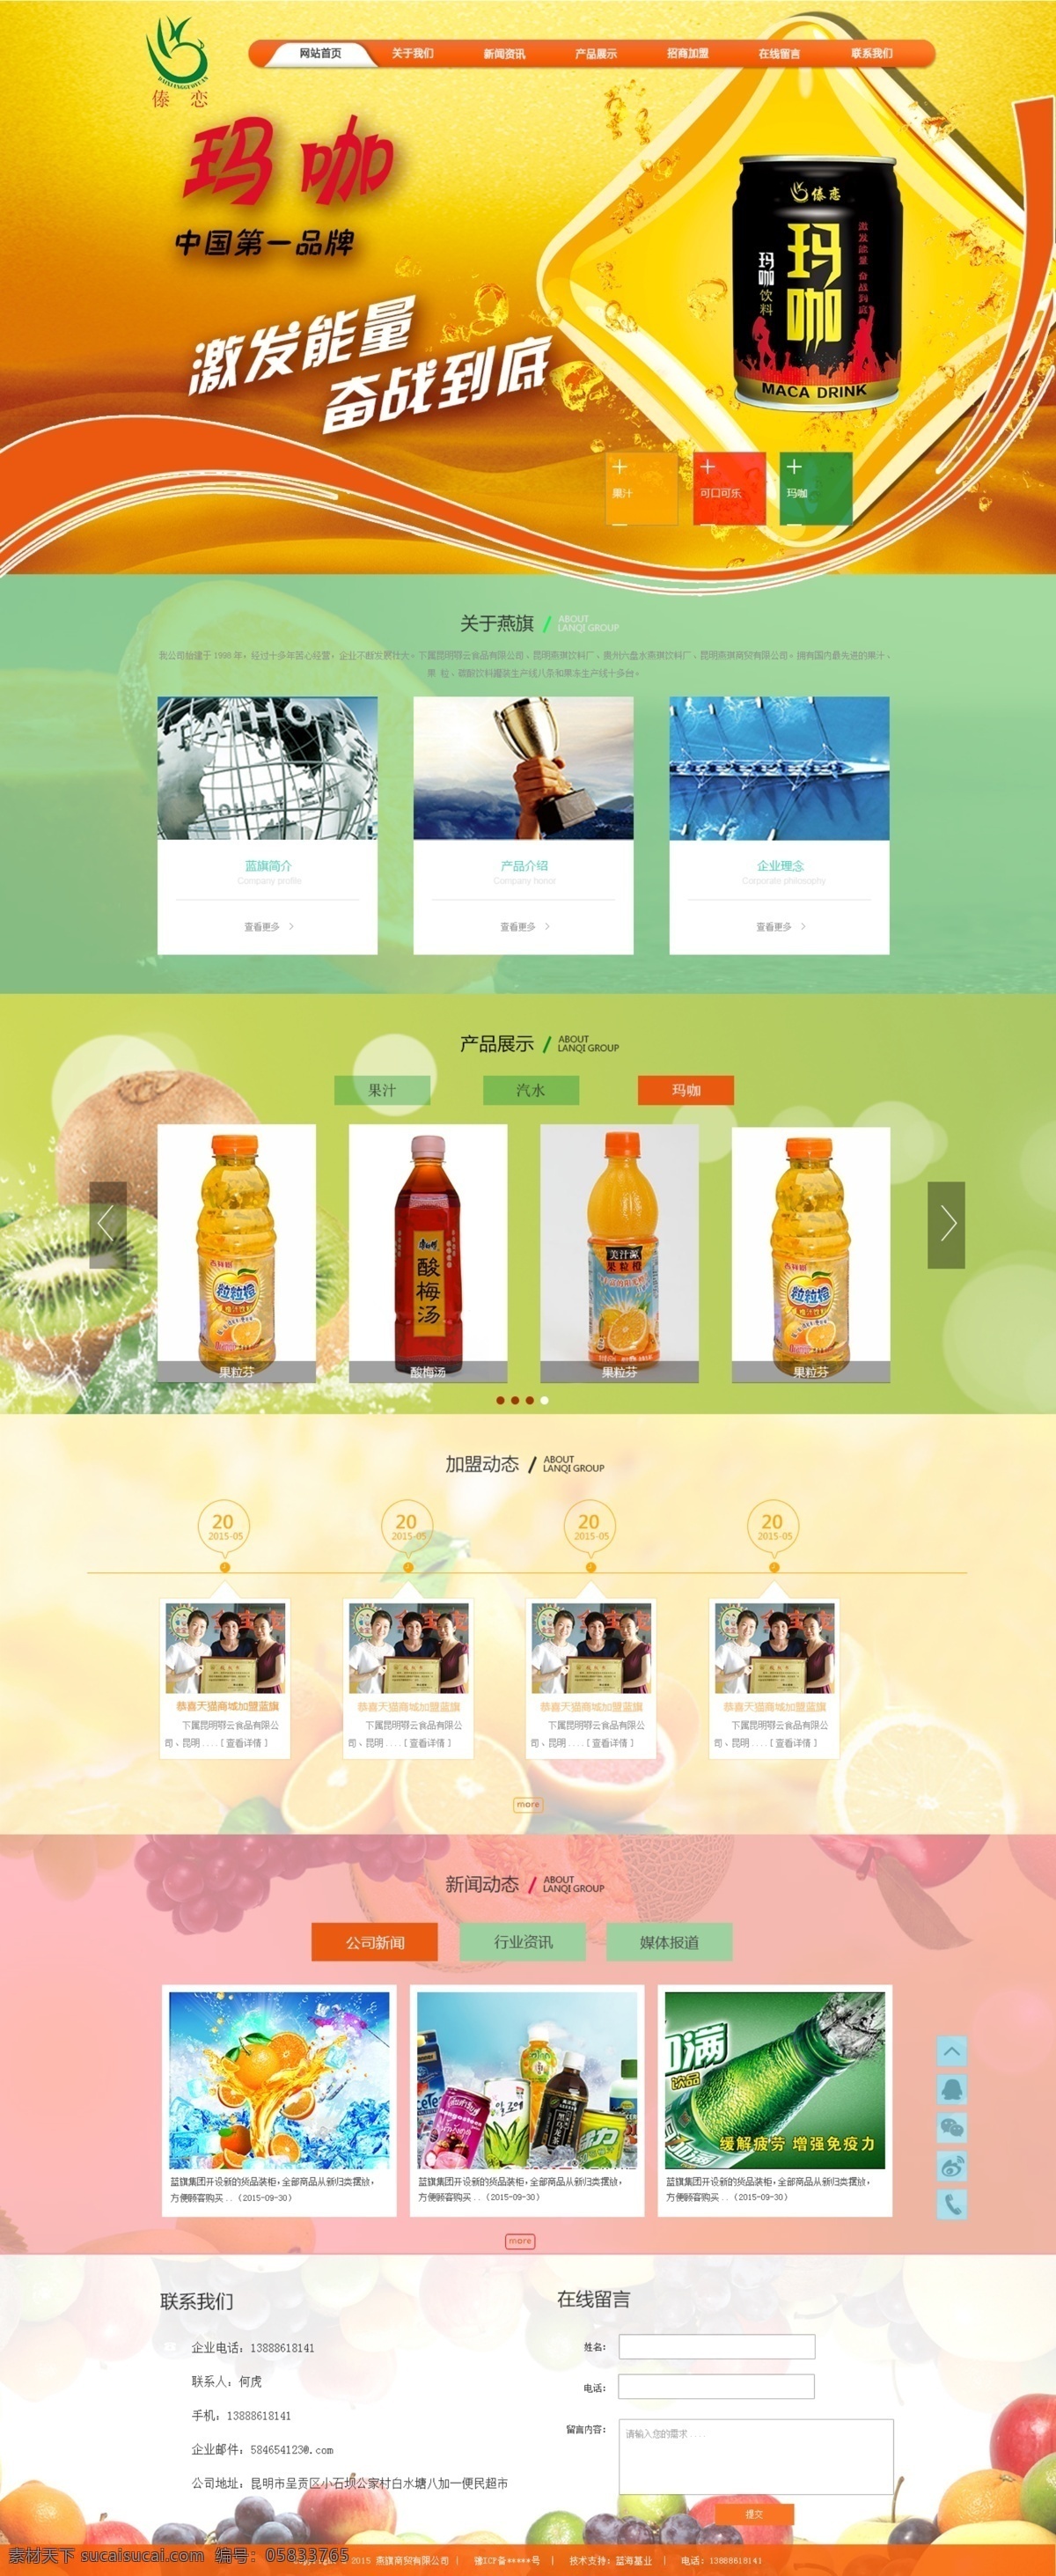 饮料网页设计 网站设计 首页 页面 网页 网站专题模板 web 界面设计 中文模板